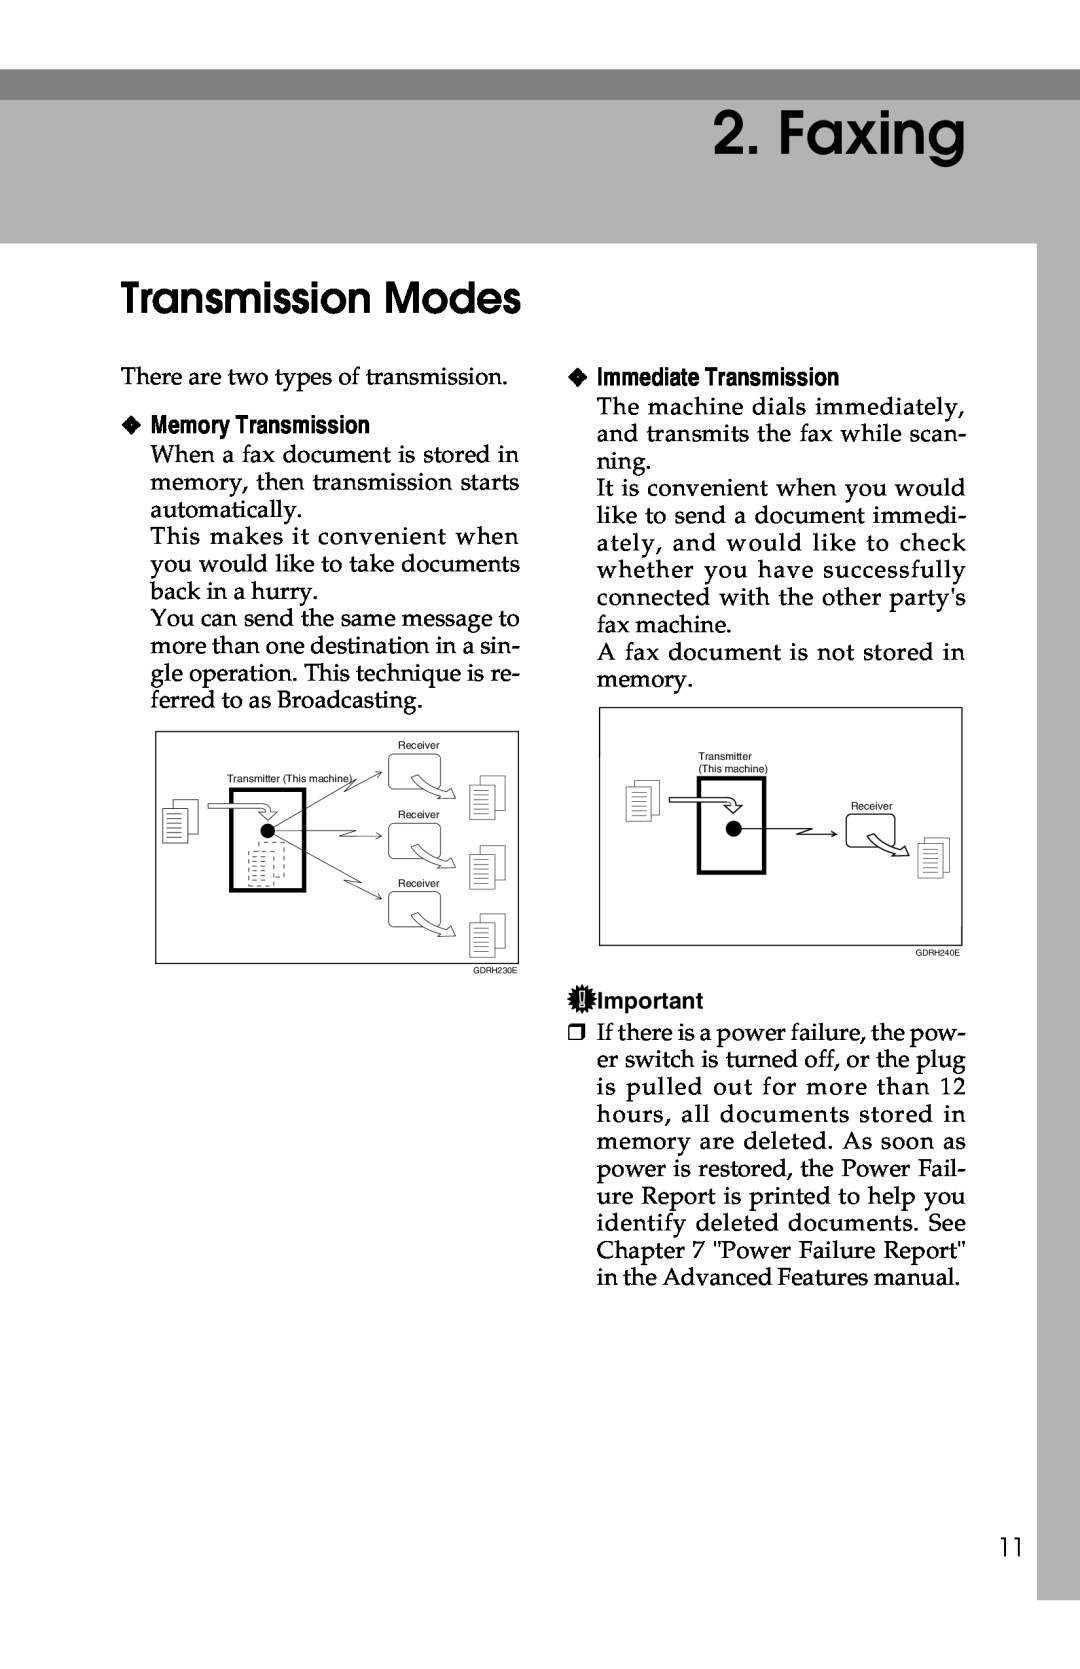 Savin G1619 manual Faxing, Transmission Modes, Memory Transmission, Immediate Transmission 